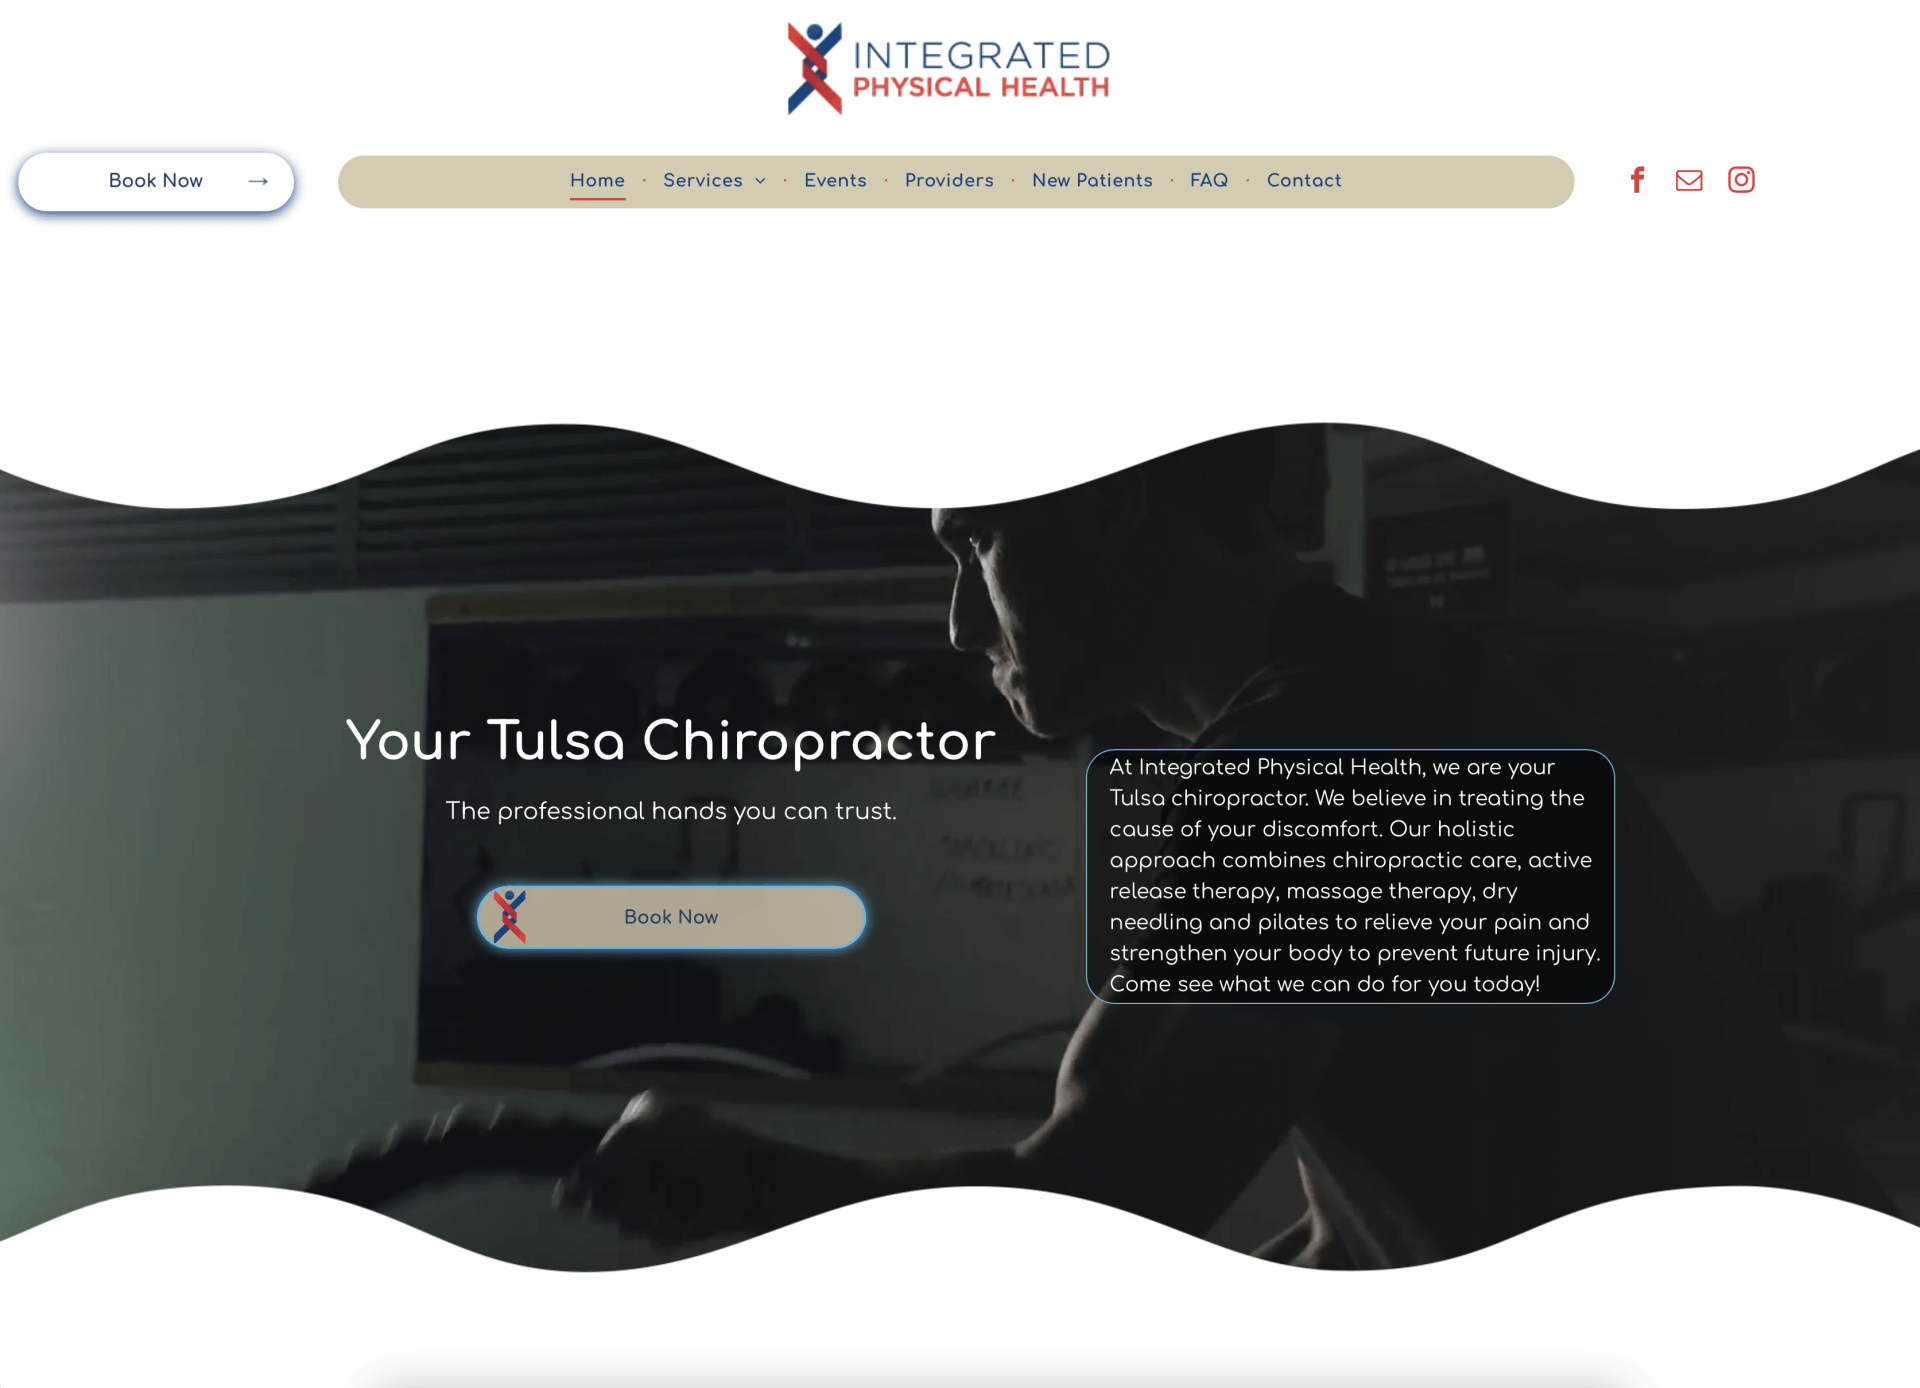 A screenshot of a website for a tulsa chiropractor